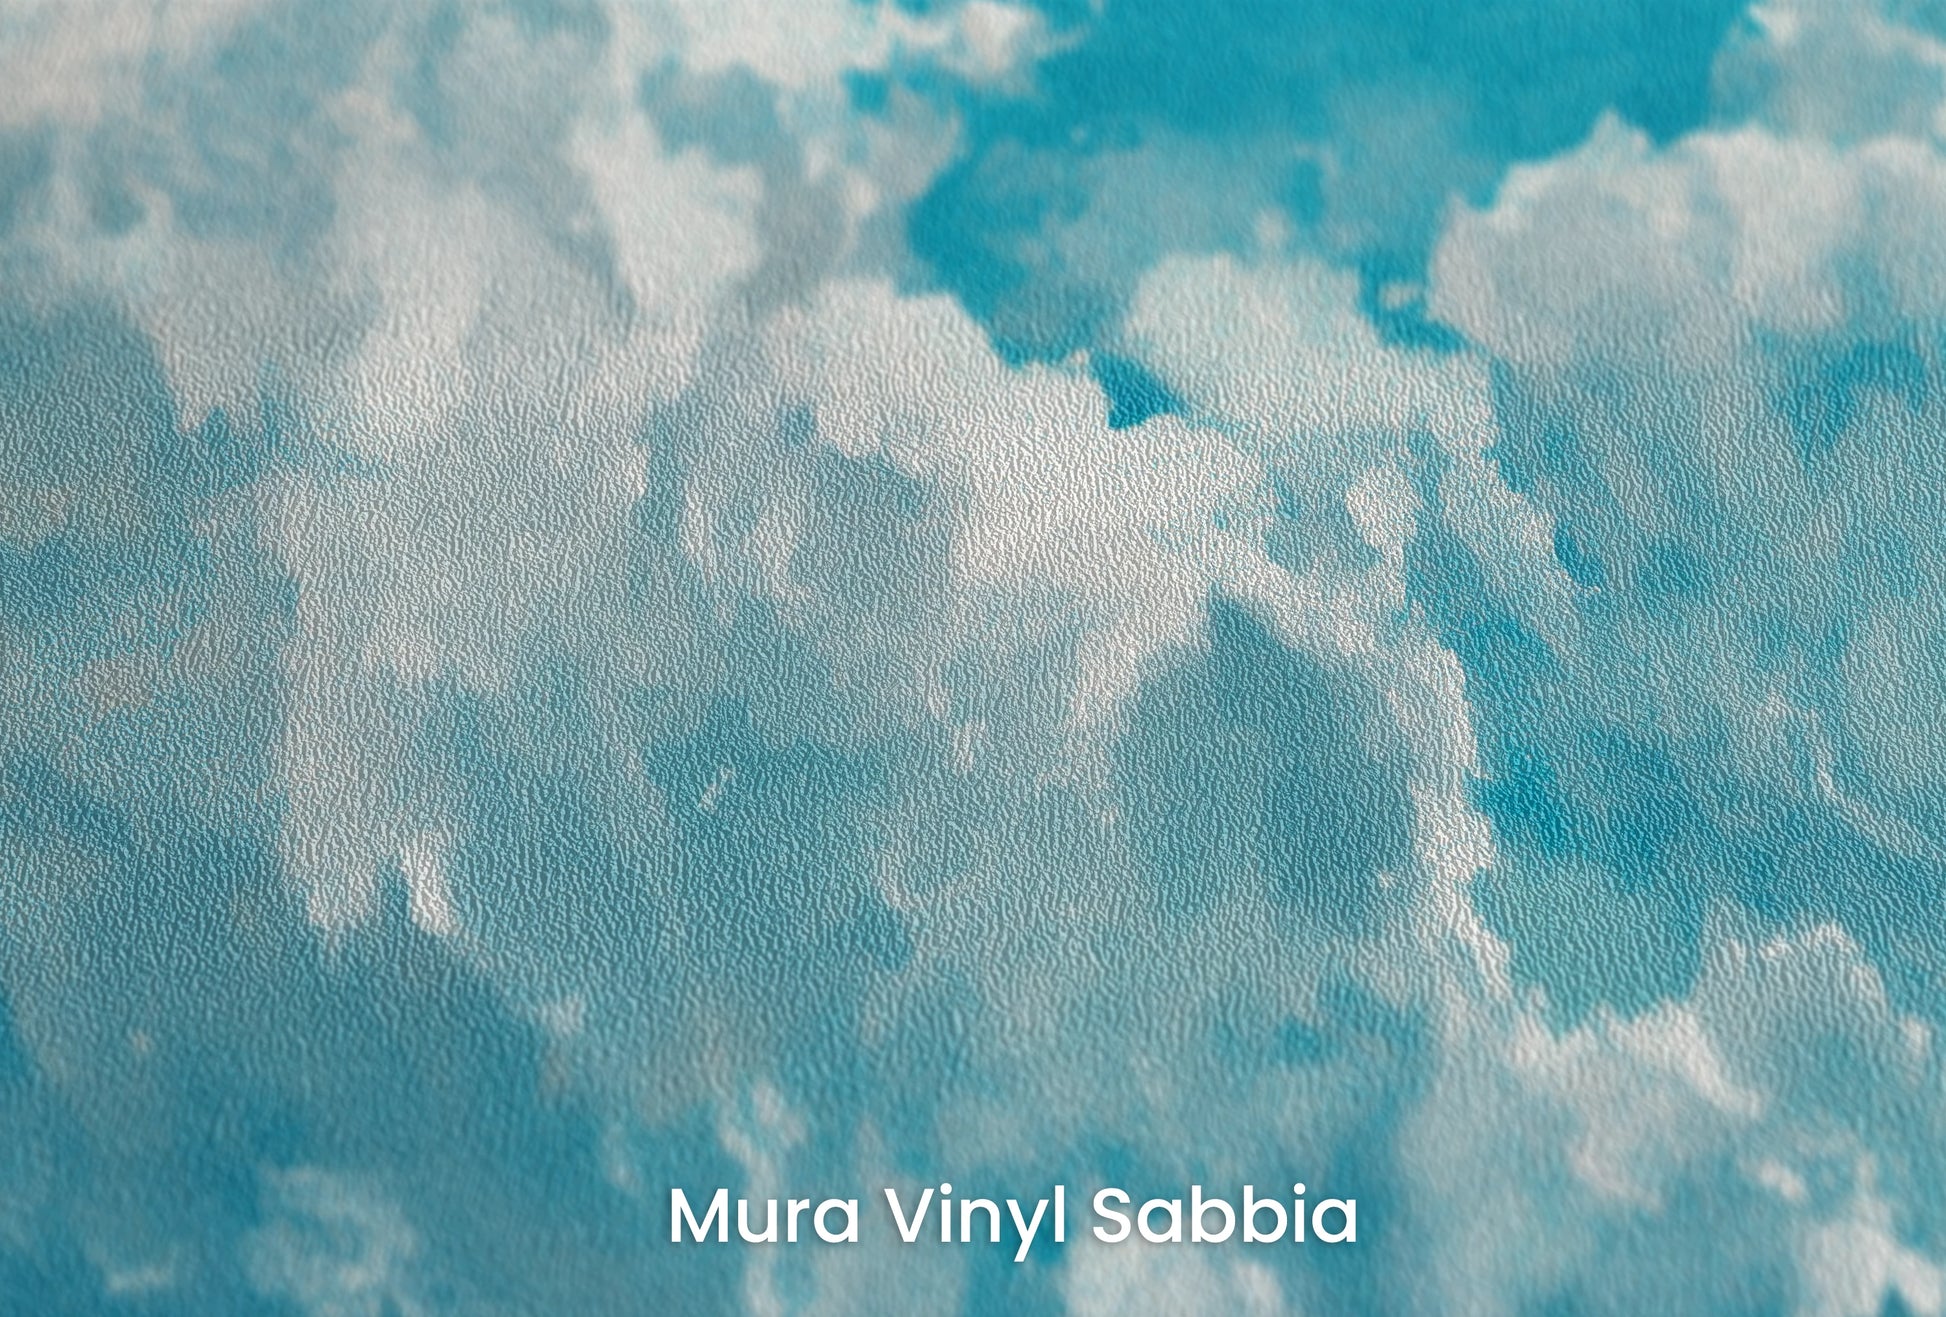 Zbliżenie na artystyczną fototapetę o nazwie Azure Purity na podłożu Mura Vinyl Sabbia struktura grubego ziarna piasku.